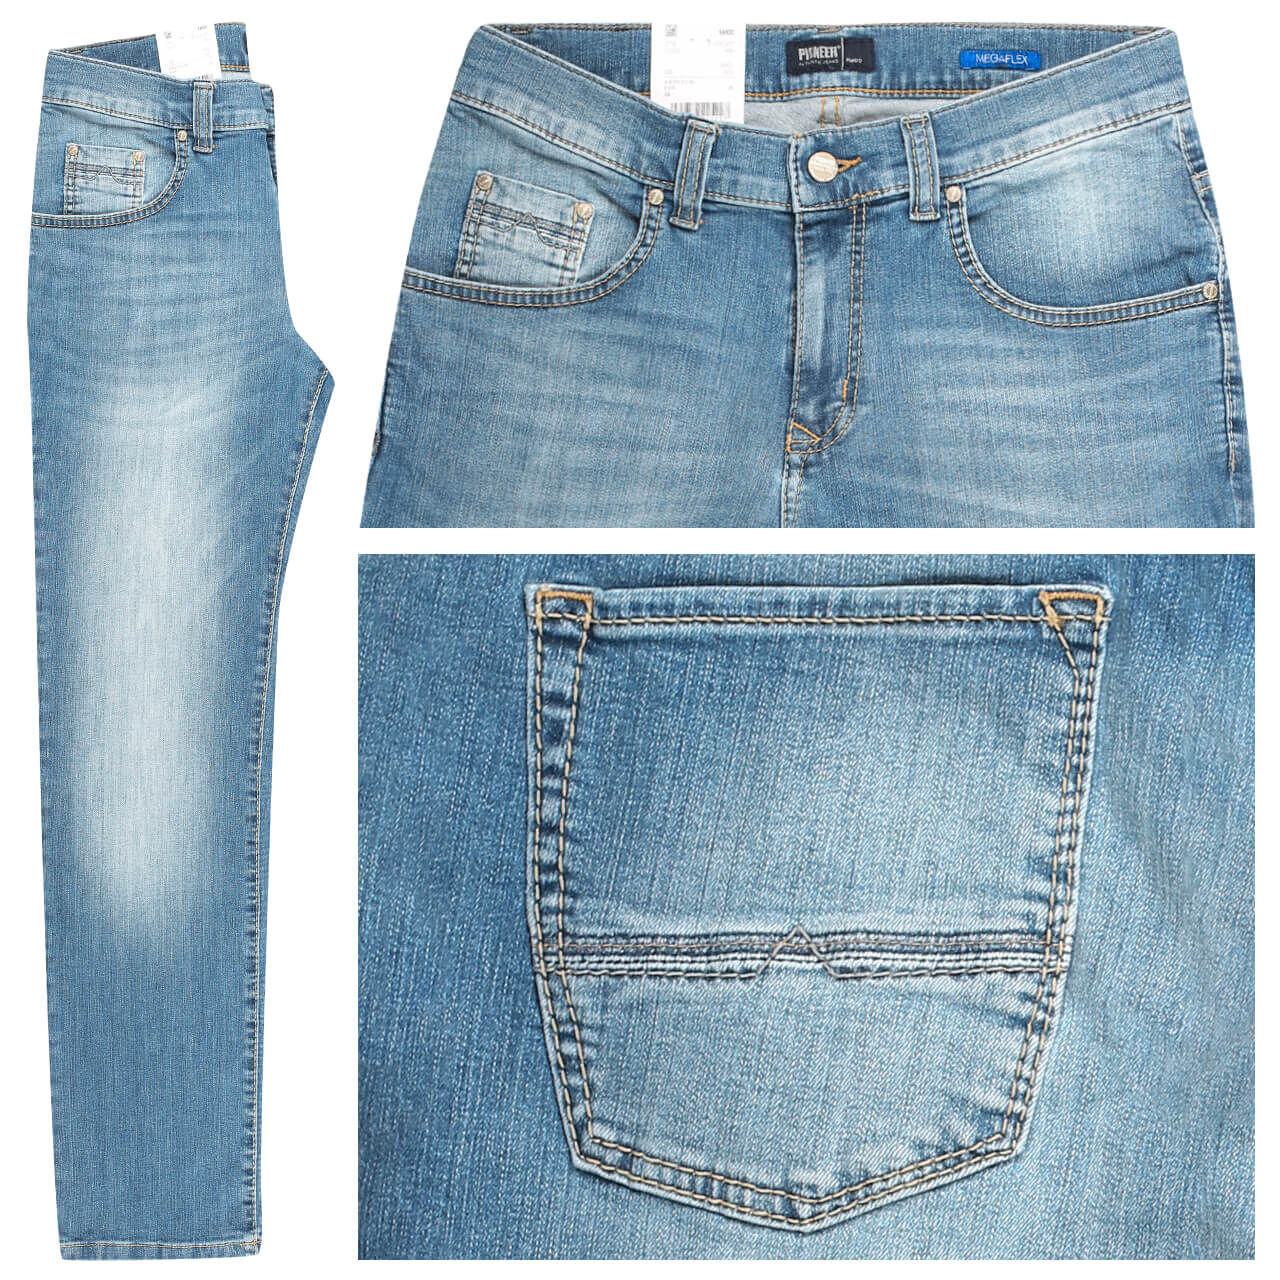 Pioneer Jeans Rando für Herren in Hellblau verwaschen, FarbNr.: 6836